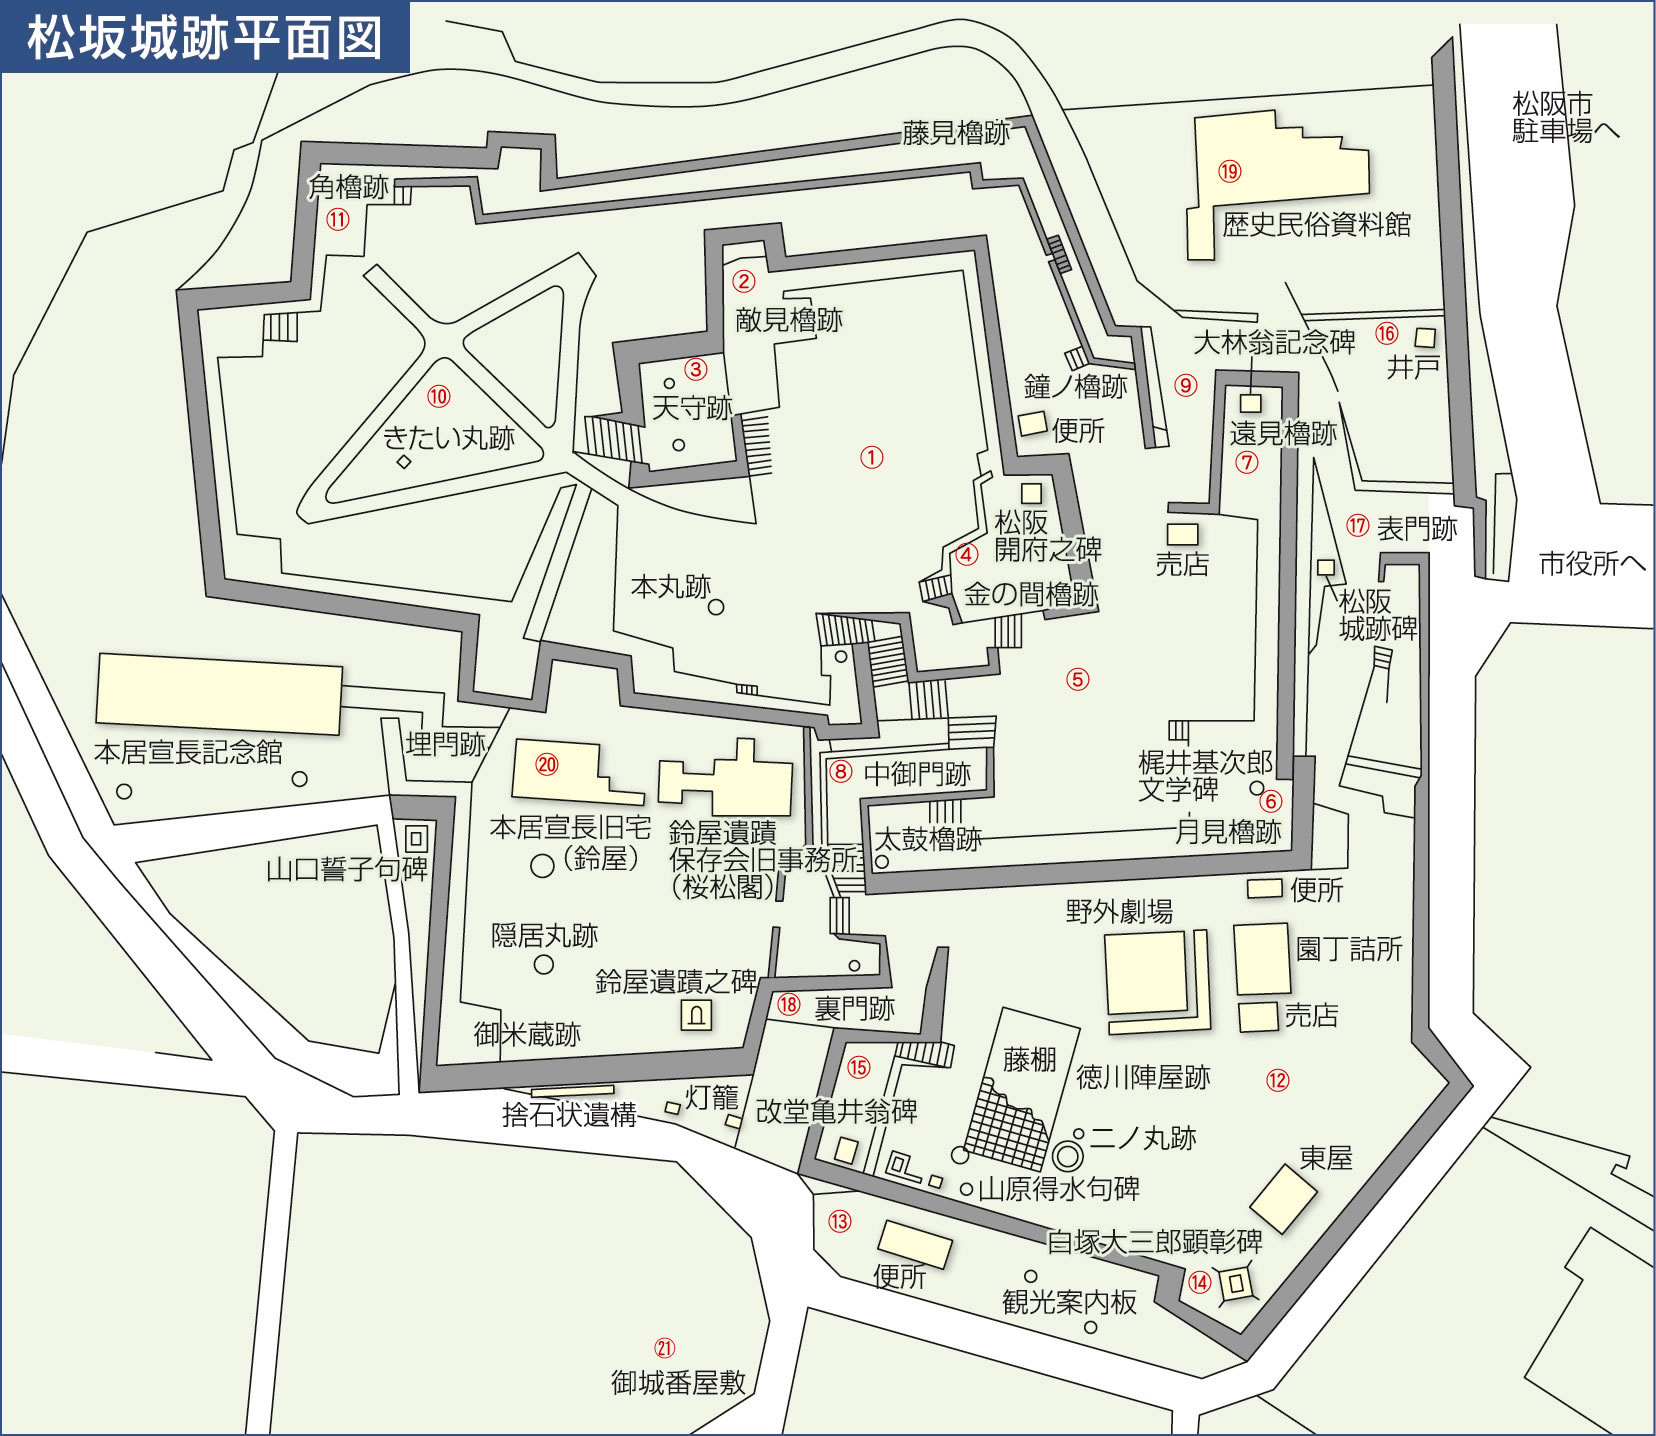 松坂城跡の概要 松阪市ホームページ